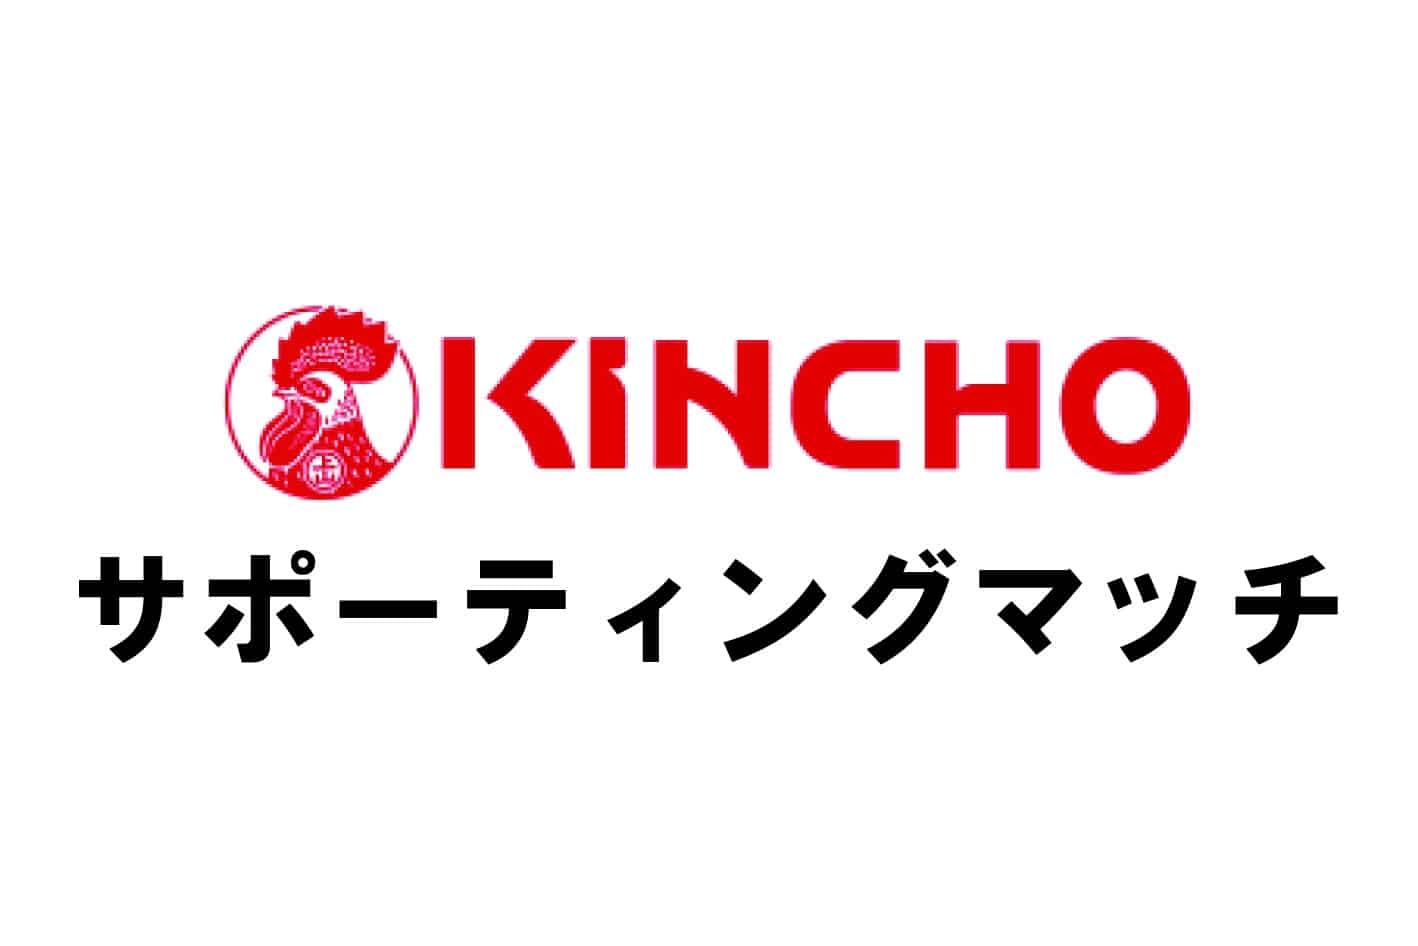 Kincho